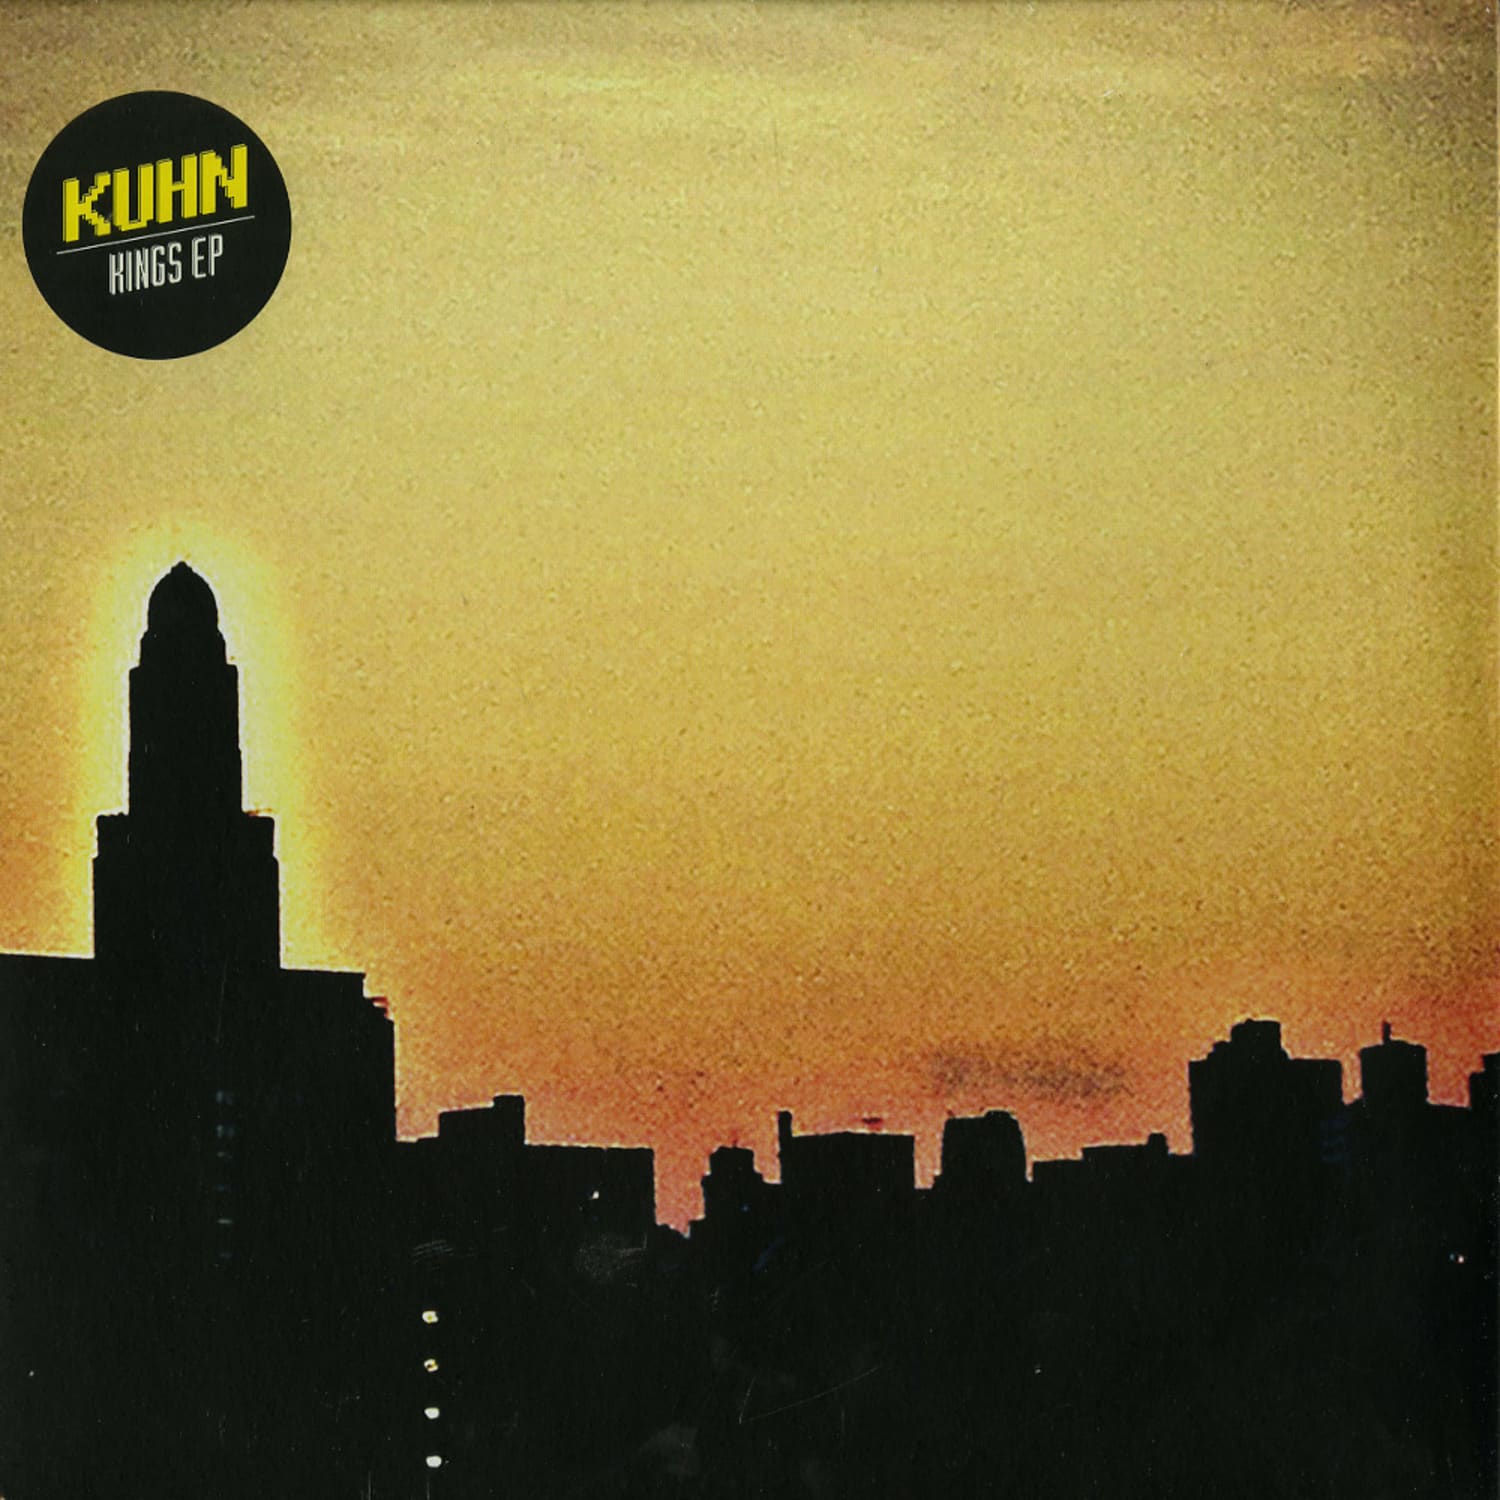 Kuhn - KINGS EP